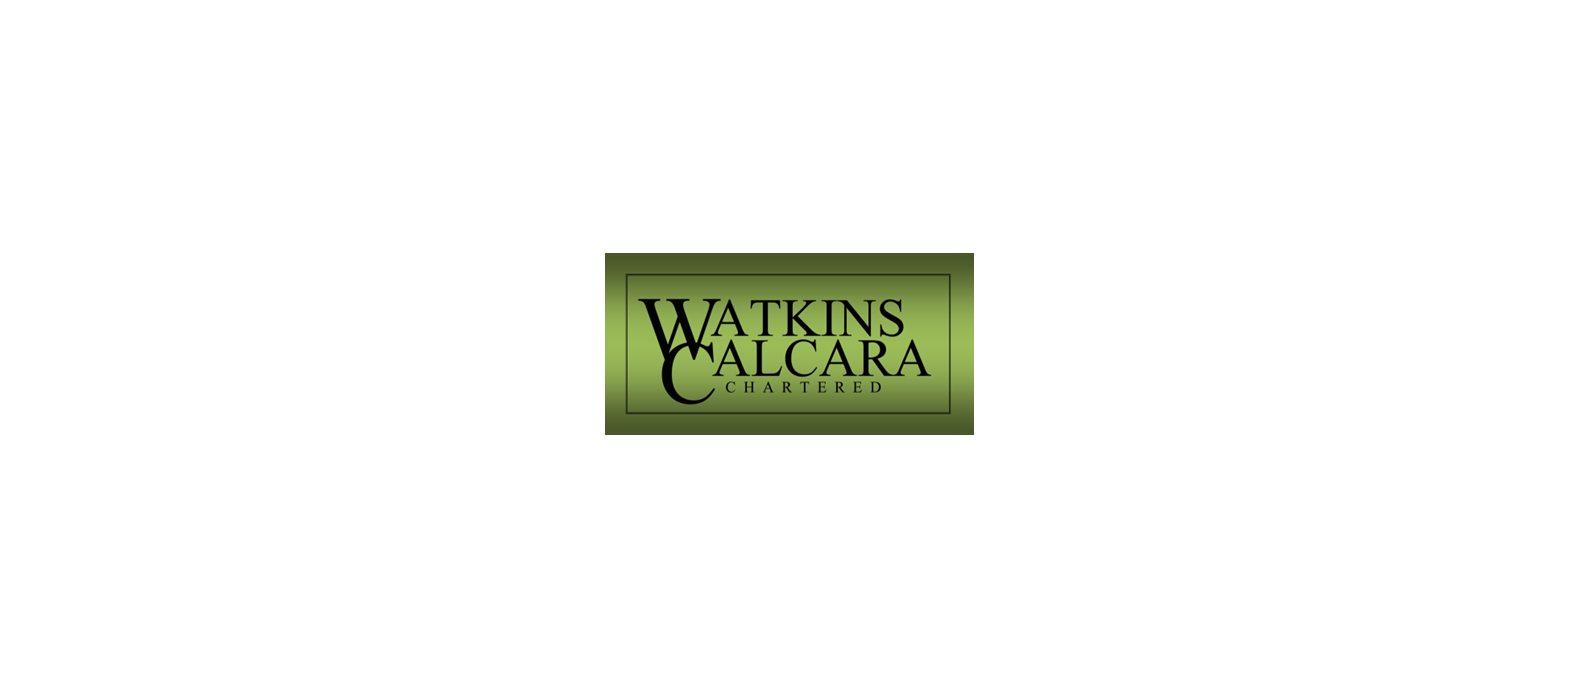 Watkins Calcara logo